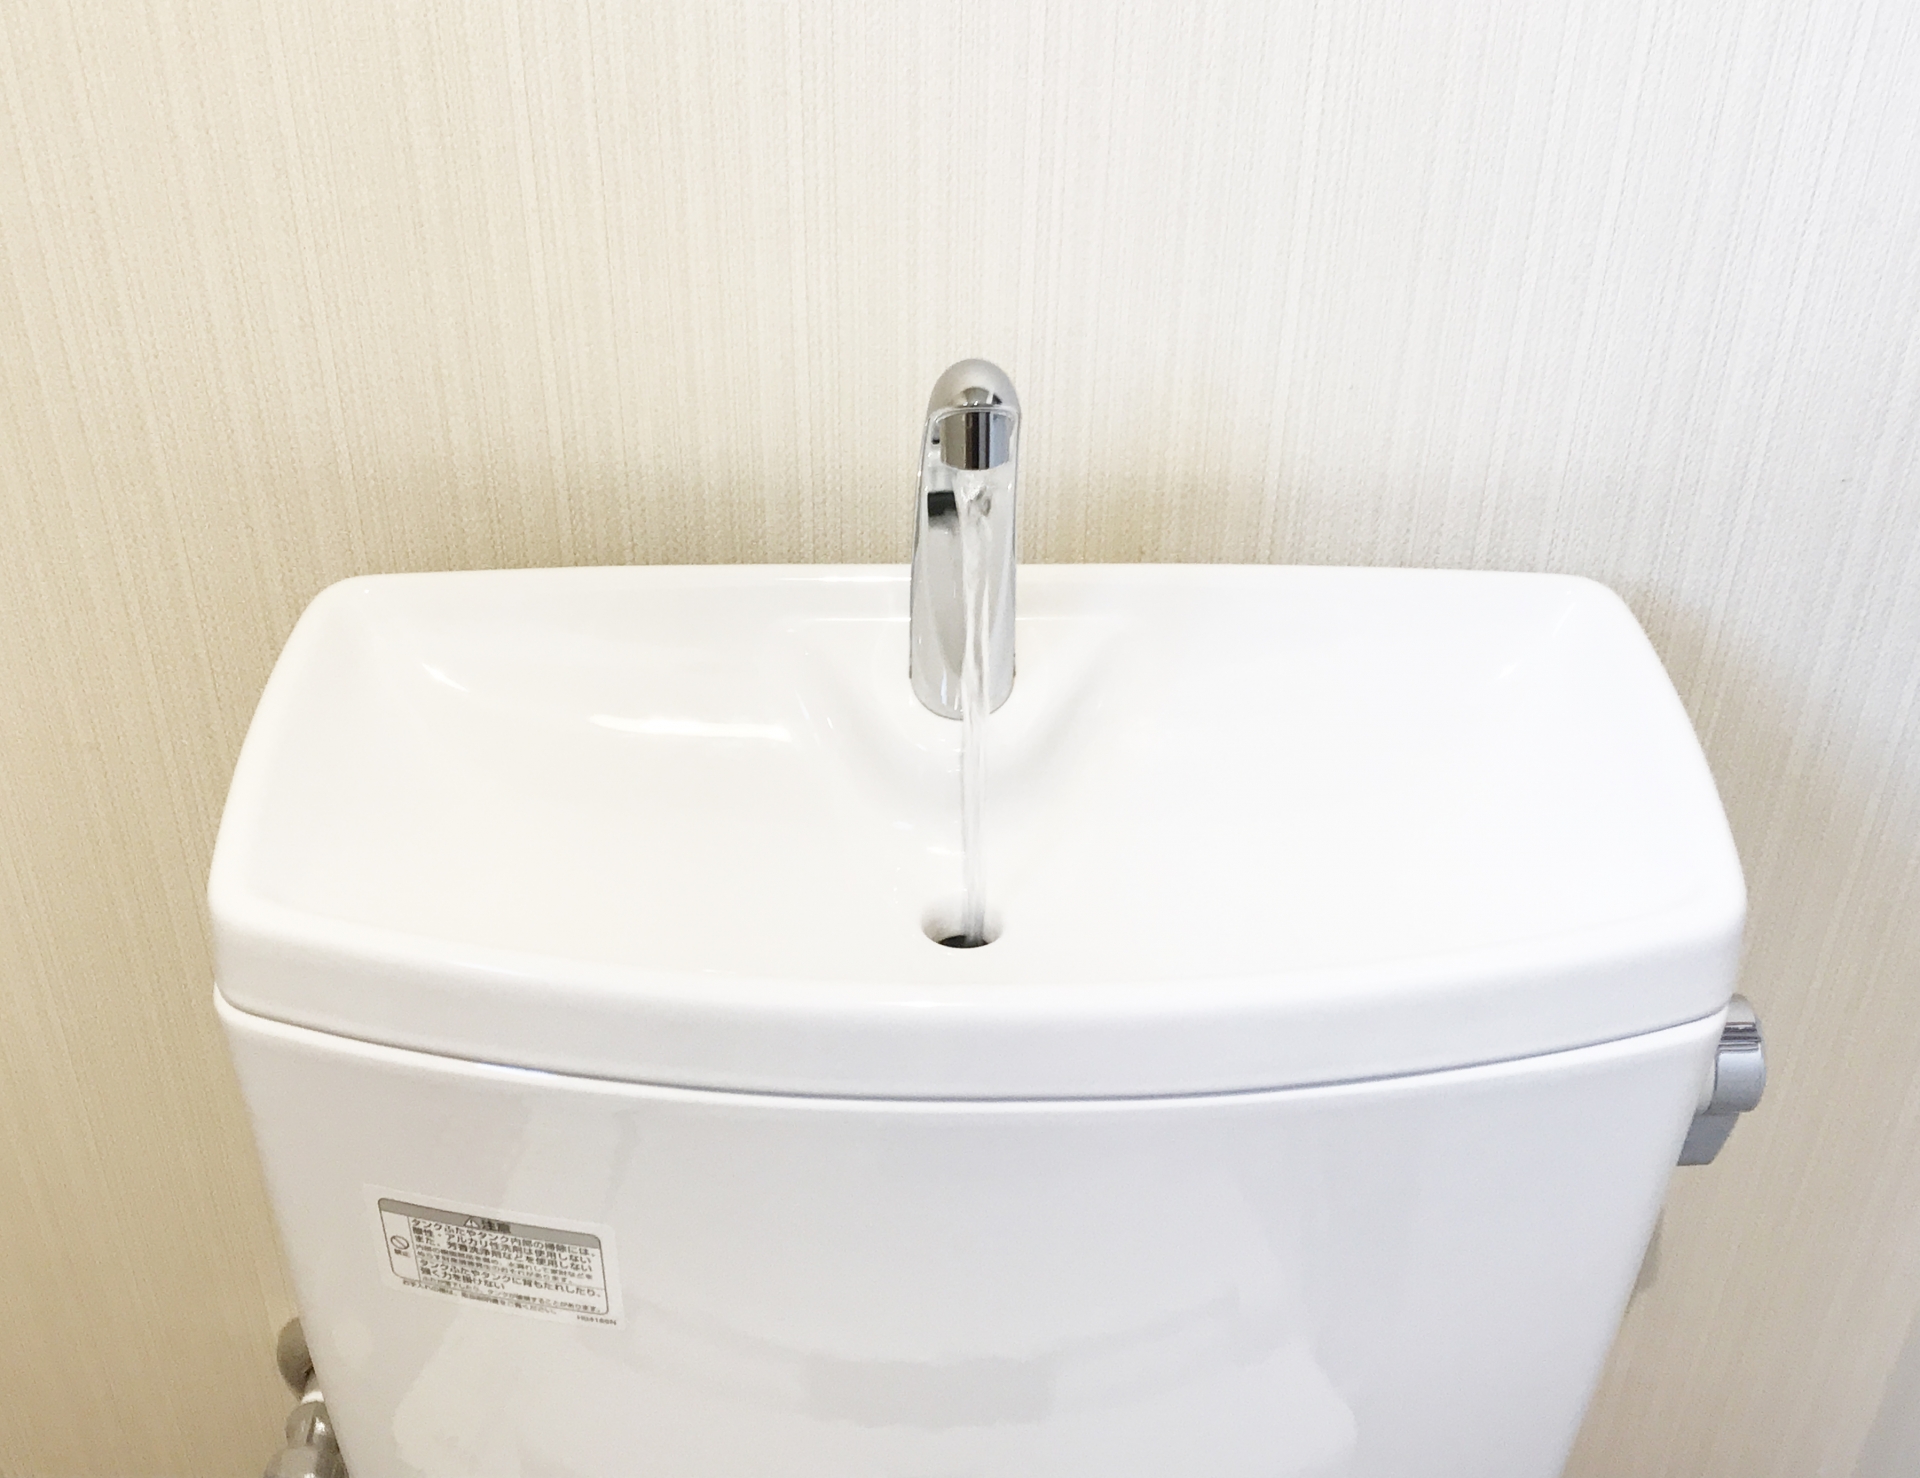 TOTOトイレタンクに水が溜まらない原因と自分で修理する方法 水もれ修理とトイレ救急社